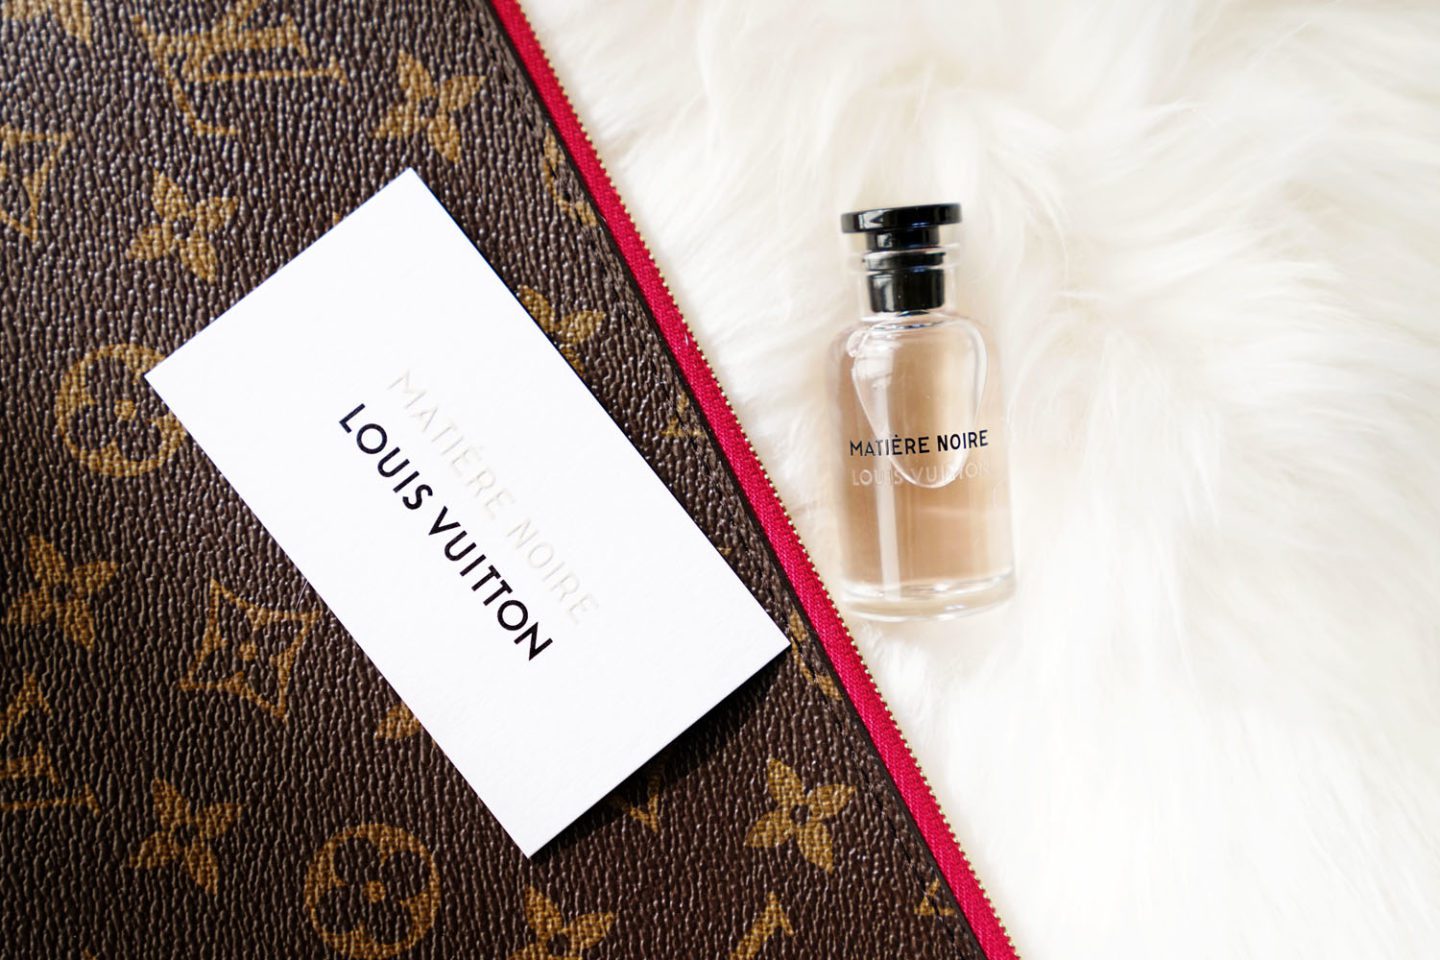 Louis Vuitton Perfume Matiere Noire Review